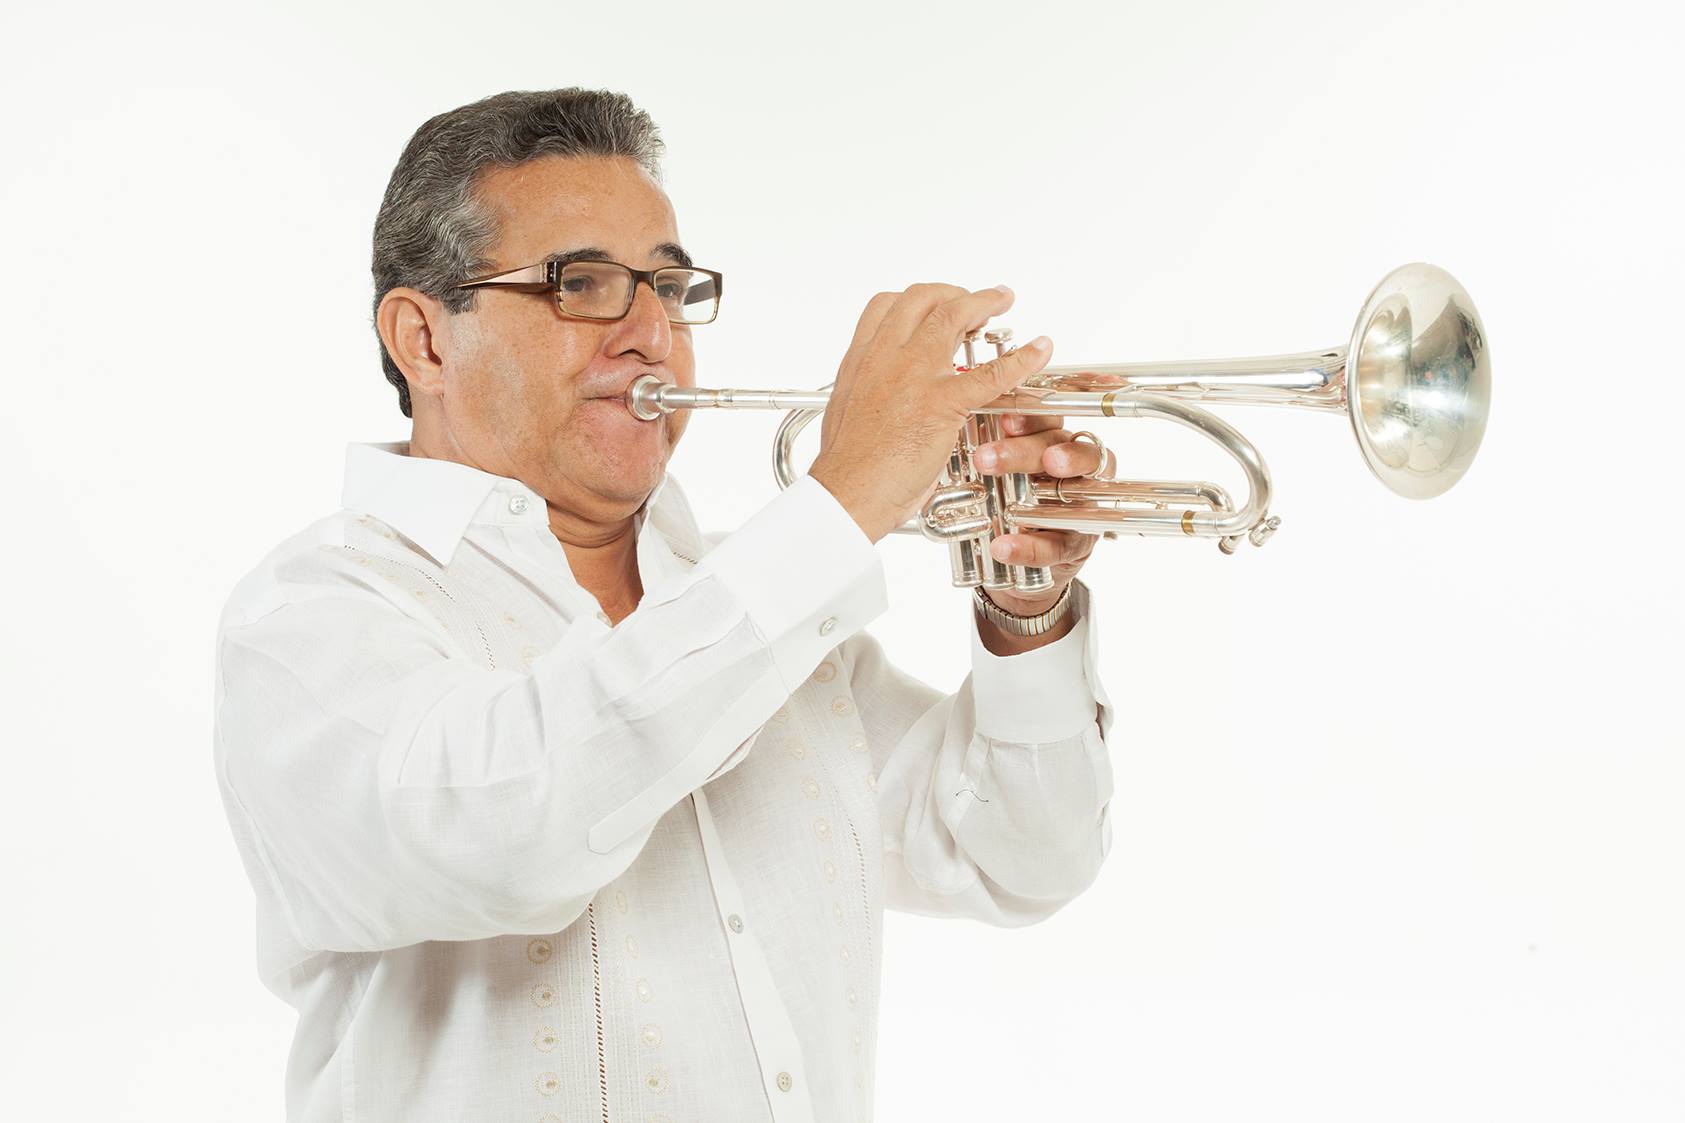 Perico Ortiz fue un auténtico niño prodigio, cuya vocación por la música se despertó a la temprana edad de cinco años. Se formó en la Escuela Libre de Música y posteriormente en el Conservatorio de San Juan, para más tarde pasar a formar parte de la Orquesta Sinfónica de Puerto Rico bajo la dirección de Pau Casals antes de cumplir los 20 años.